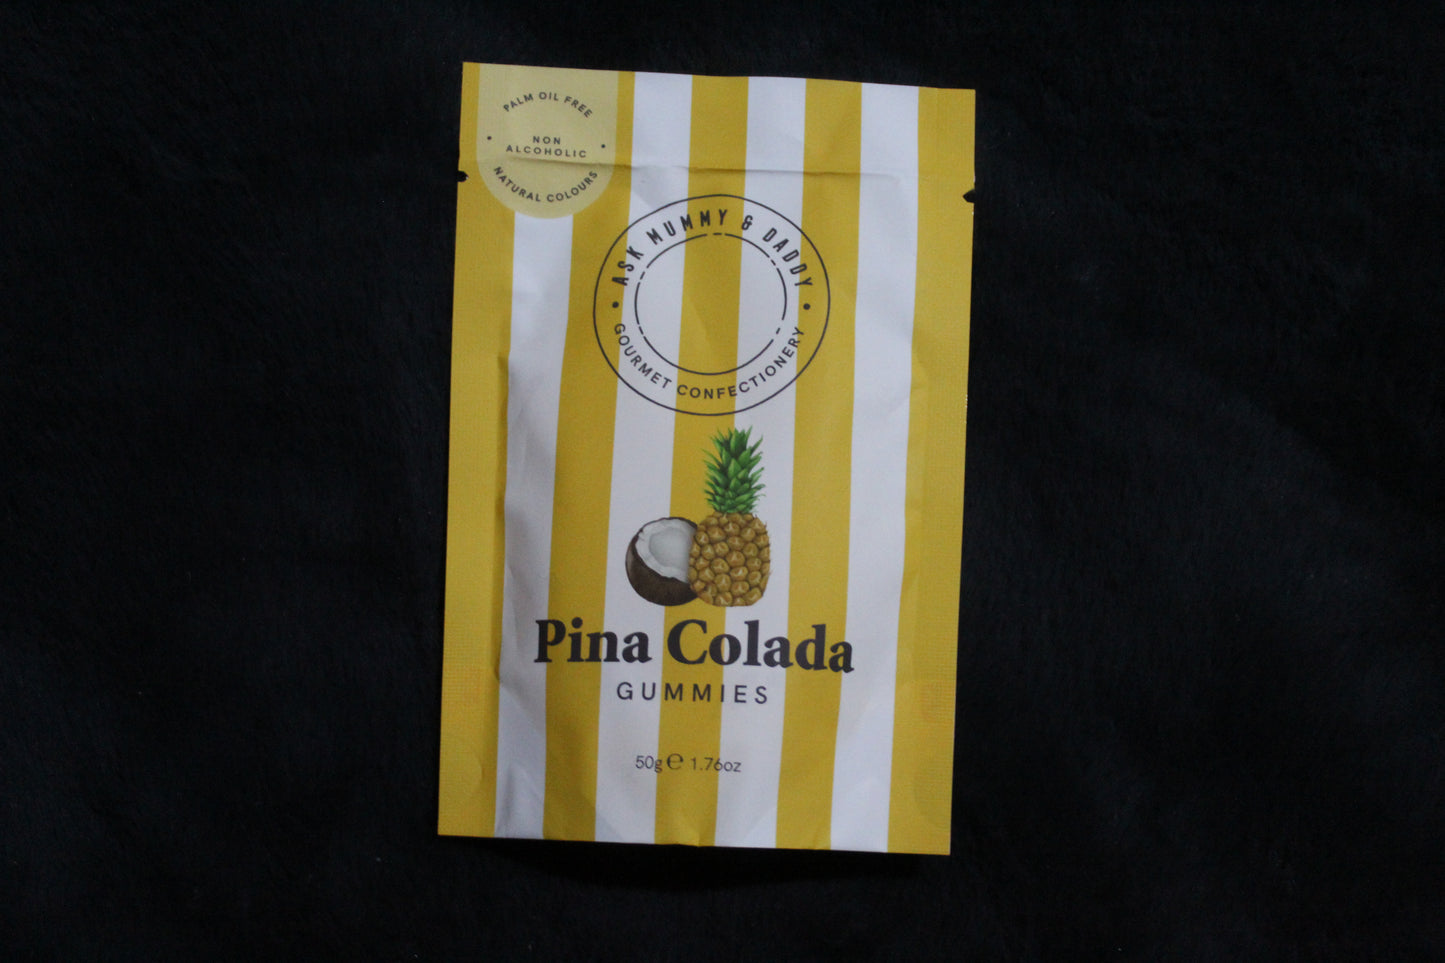 Pina Colada Gummies